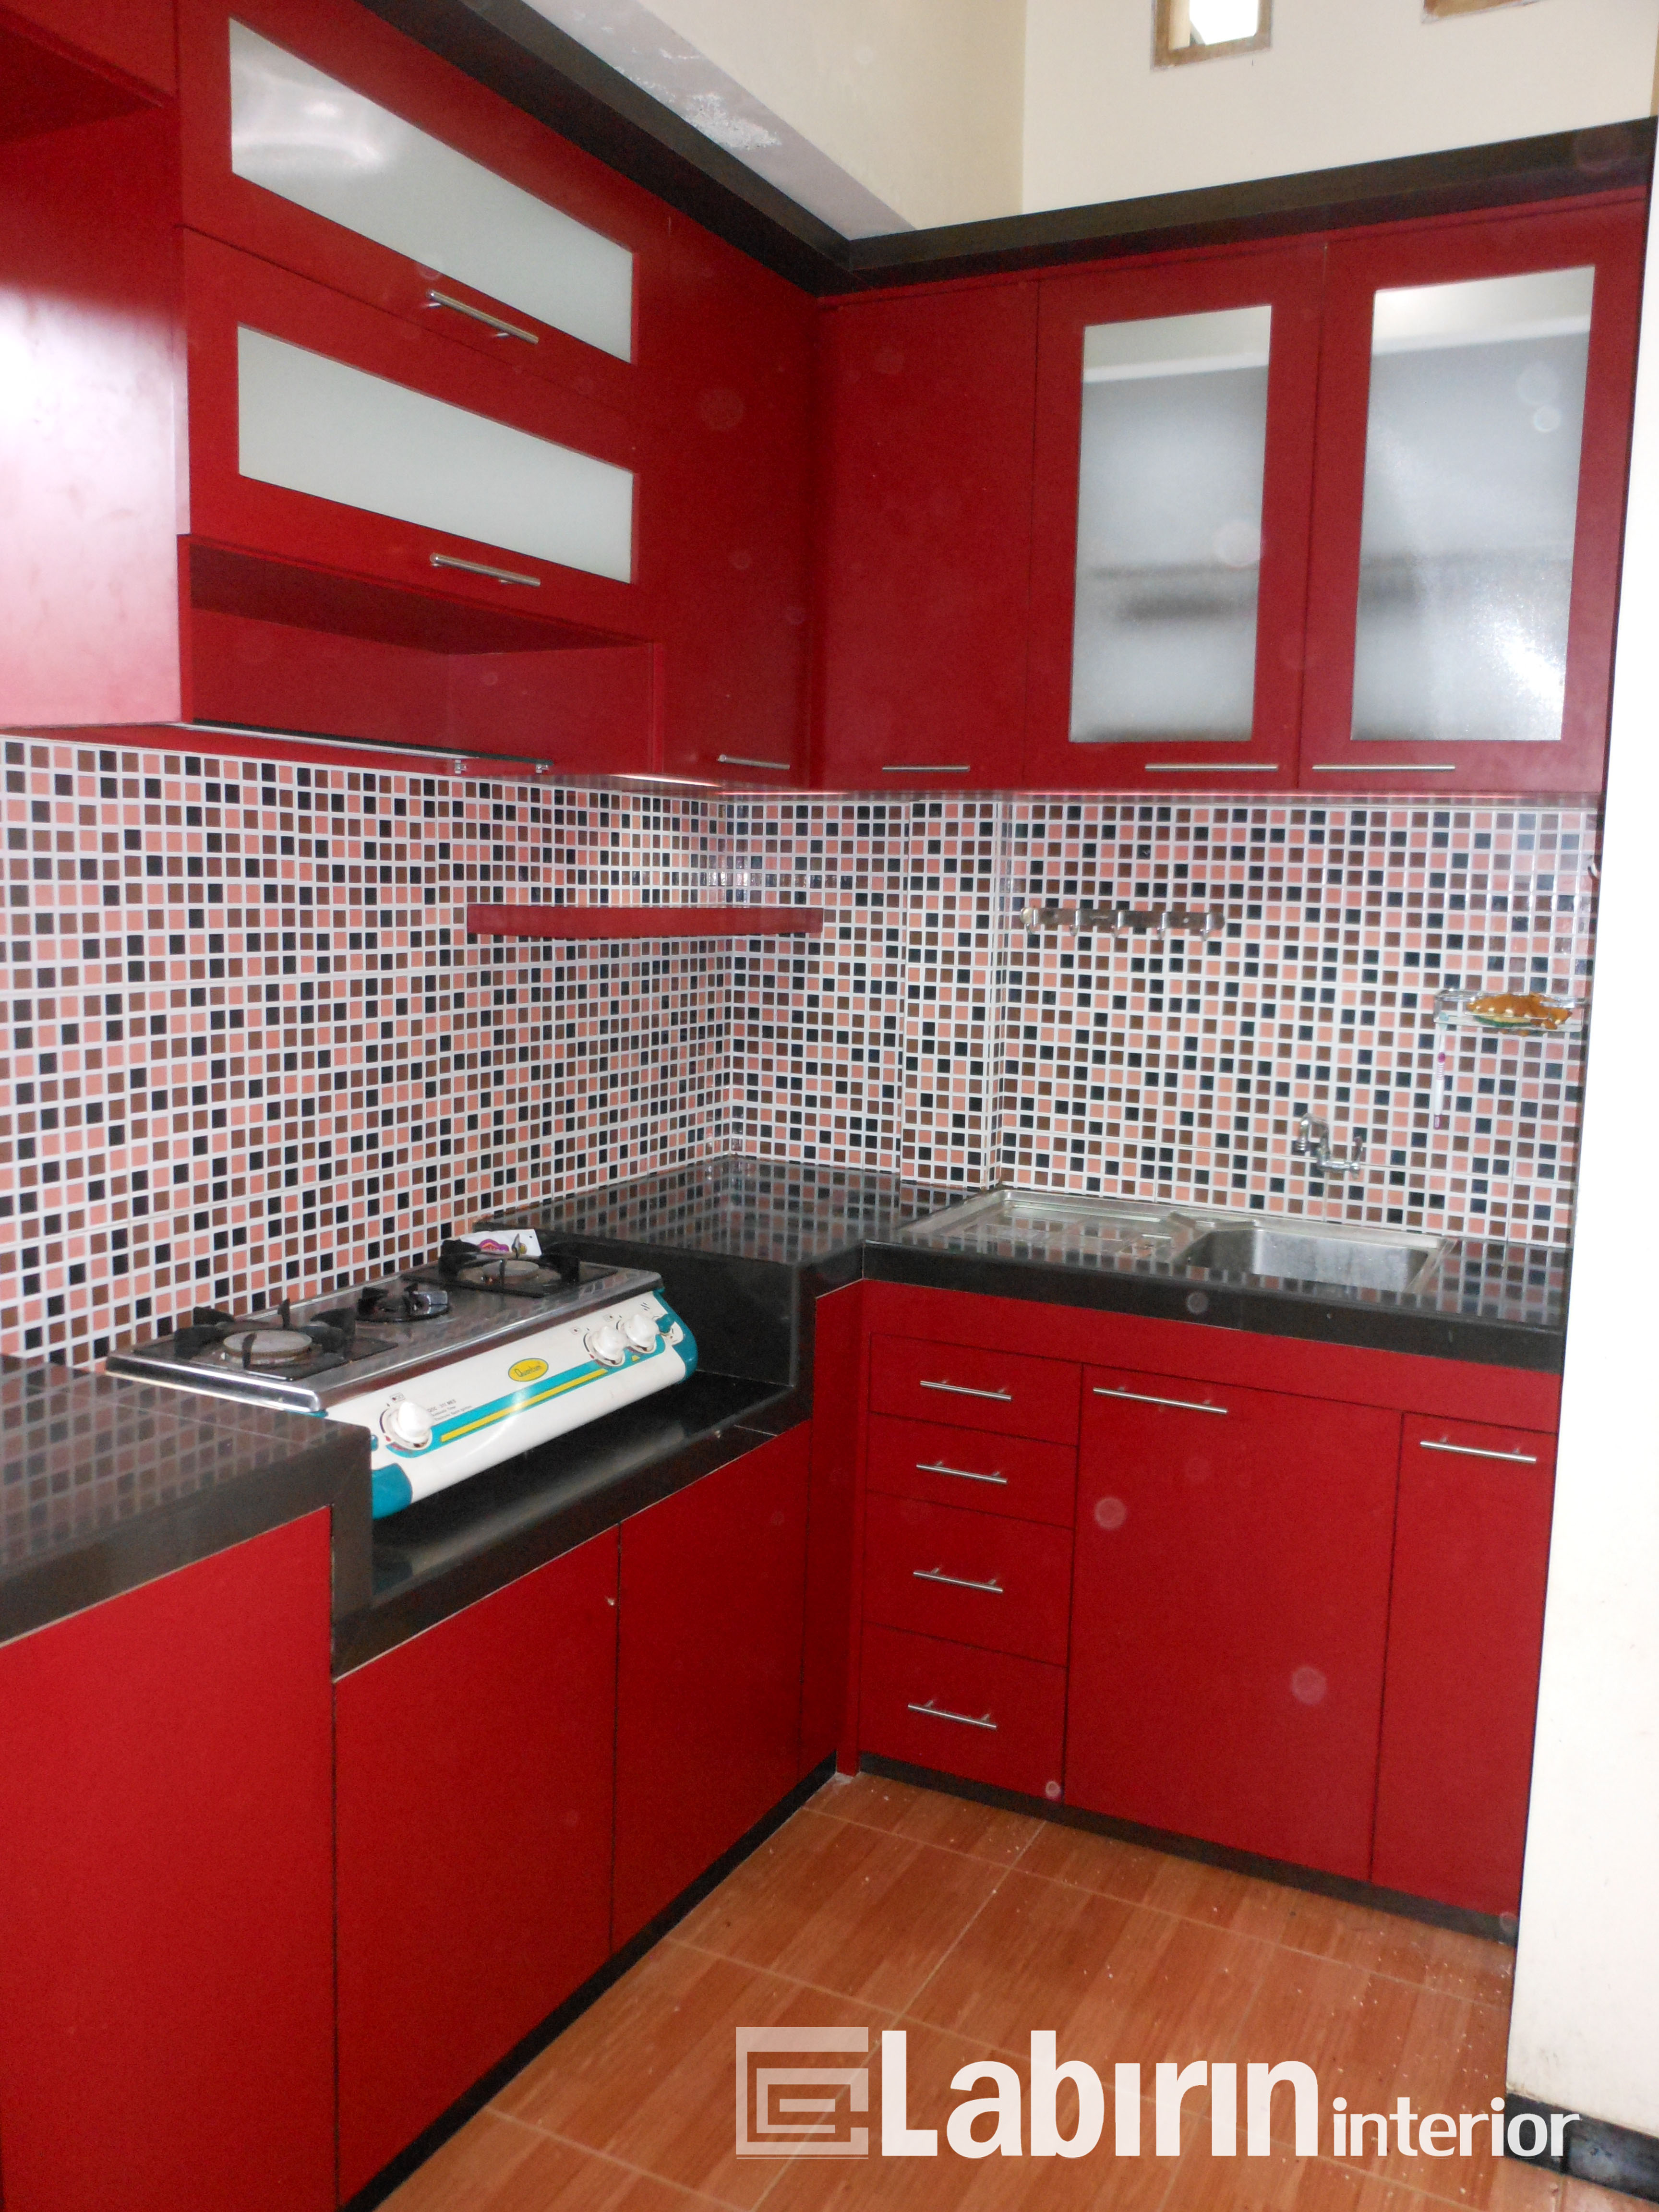 Desain Dapur Merah Hitam Model Interior Rumah